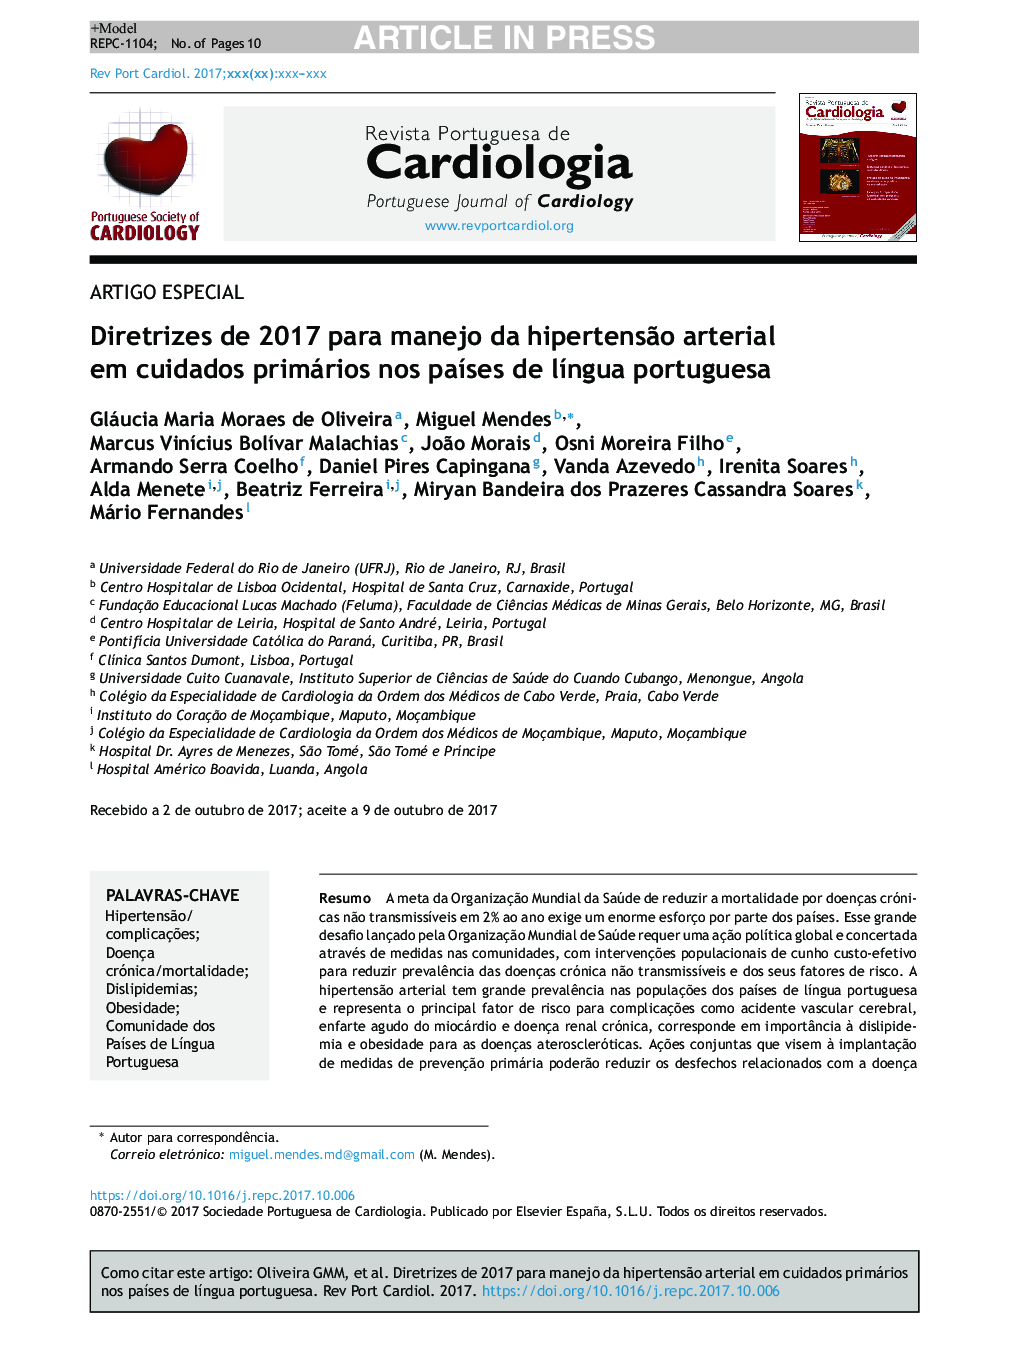 Diretrizes de 2017 para manejo da hipertensÃ£o arterial em cuidados primários nos paÃ­ses de lÃ­ngua portuguesa